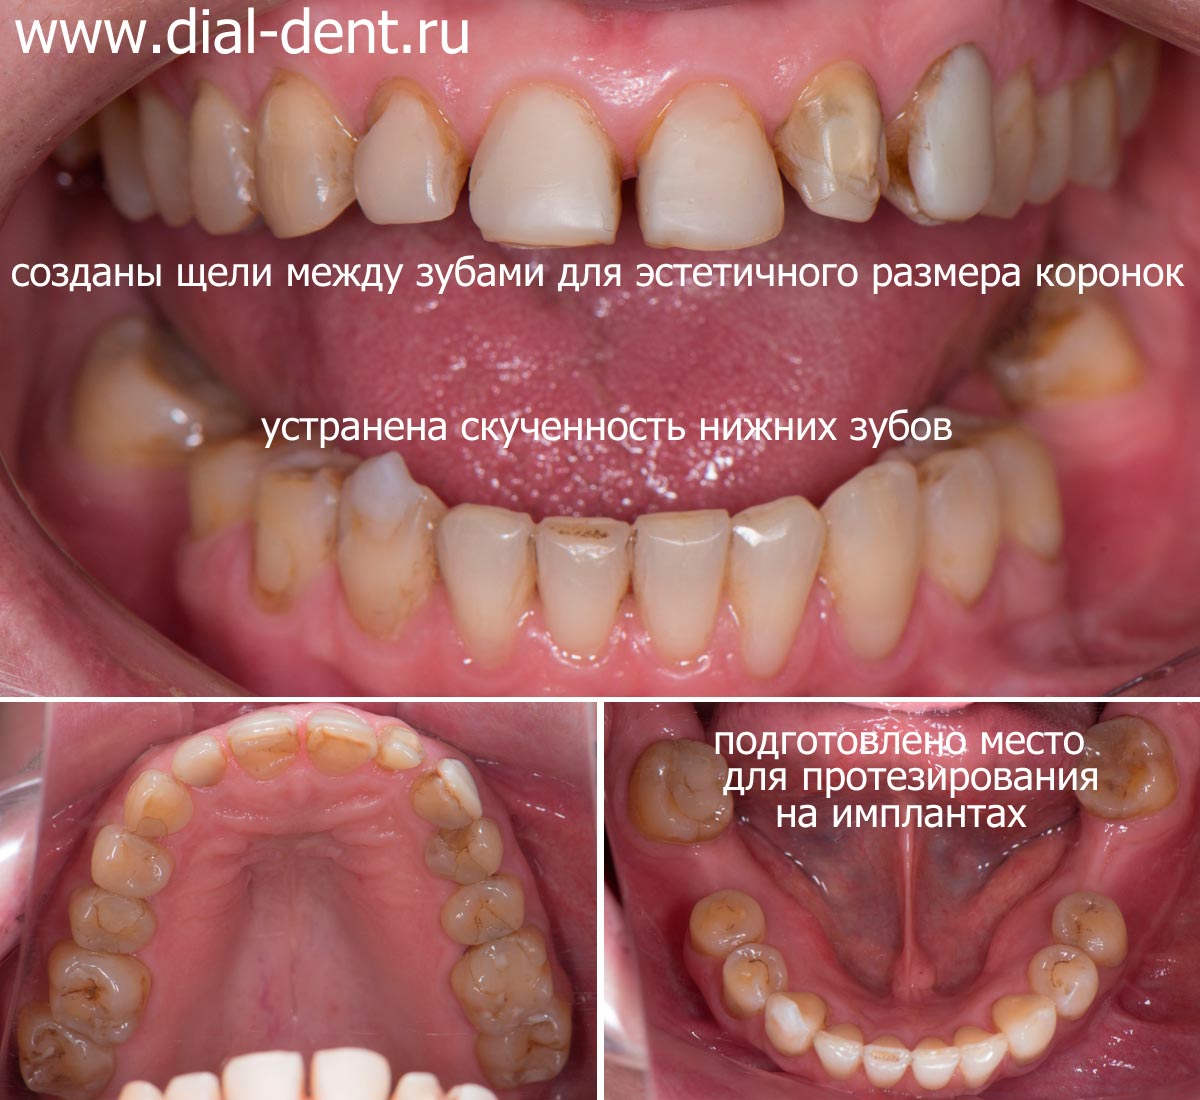 вид зубов после исправления прикуса и ортодонтической подготовки к протезированию